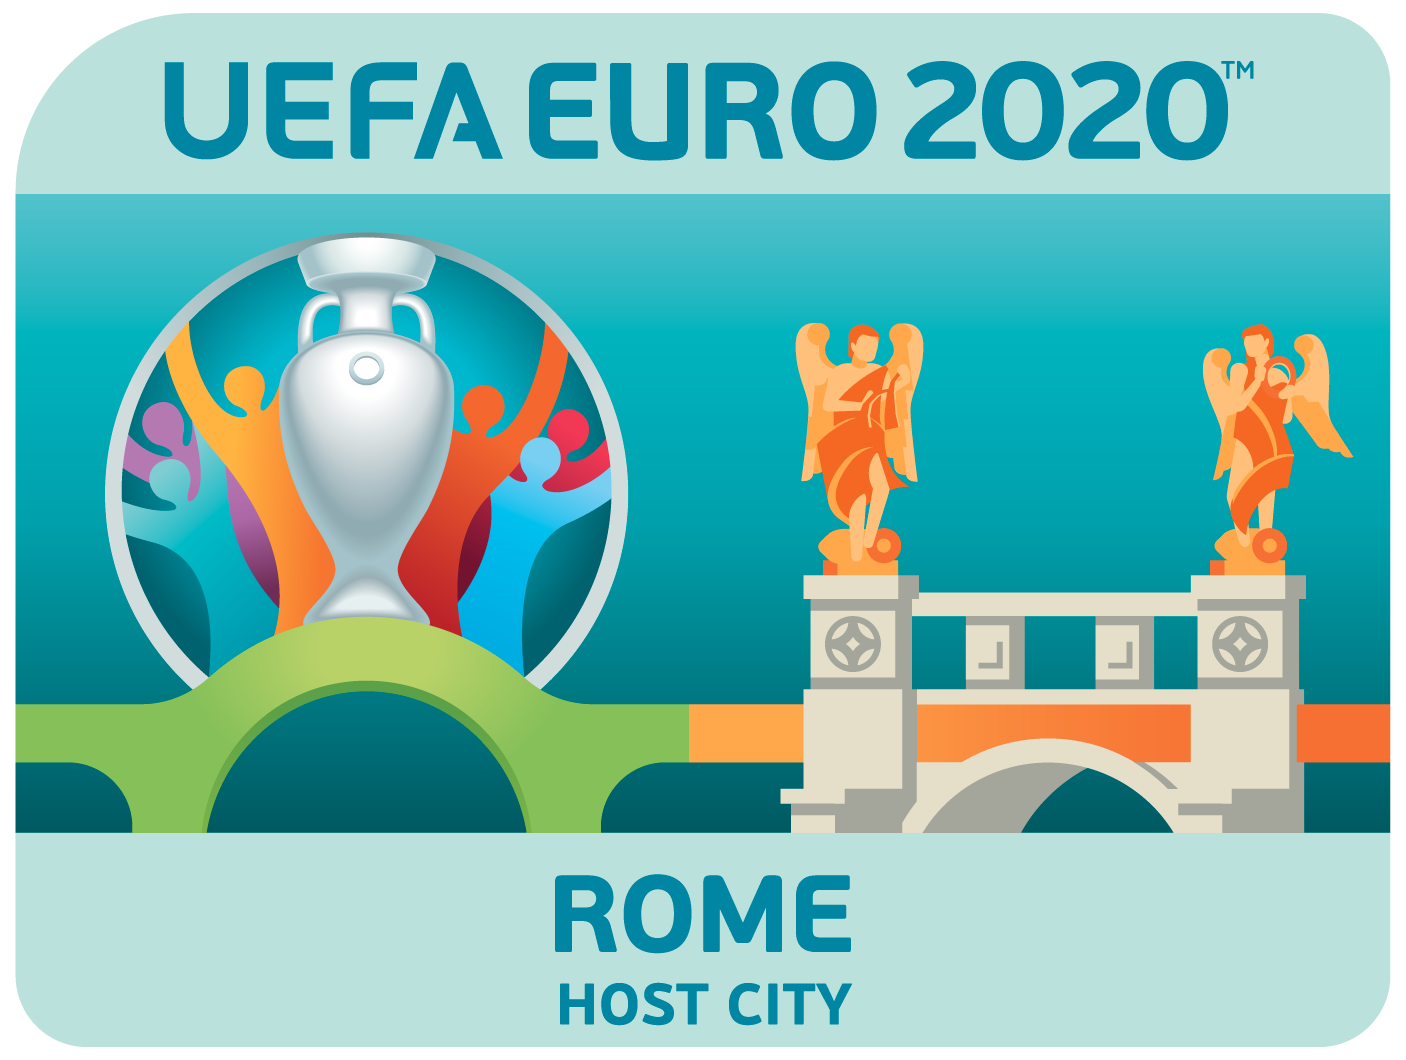 uefa euro 2020 ticket prices